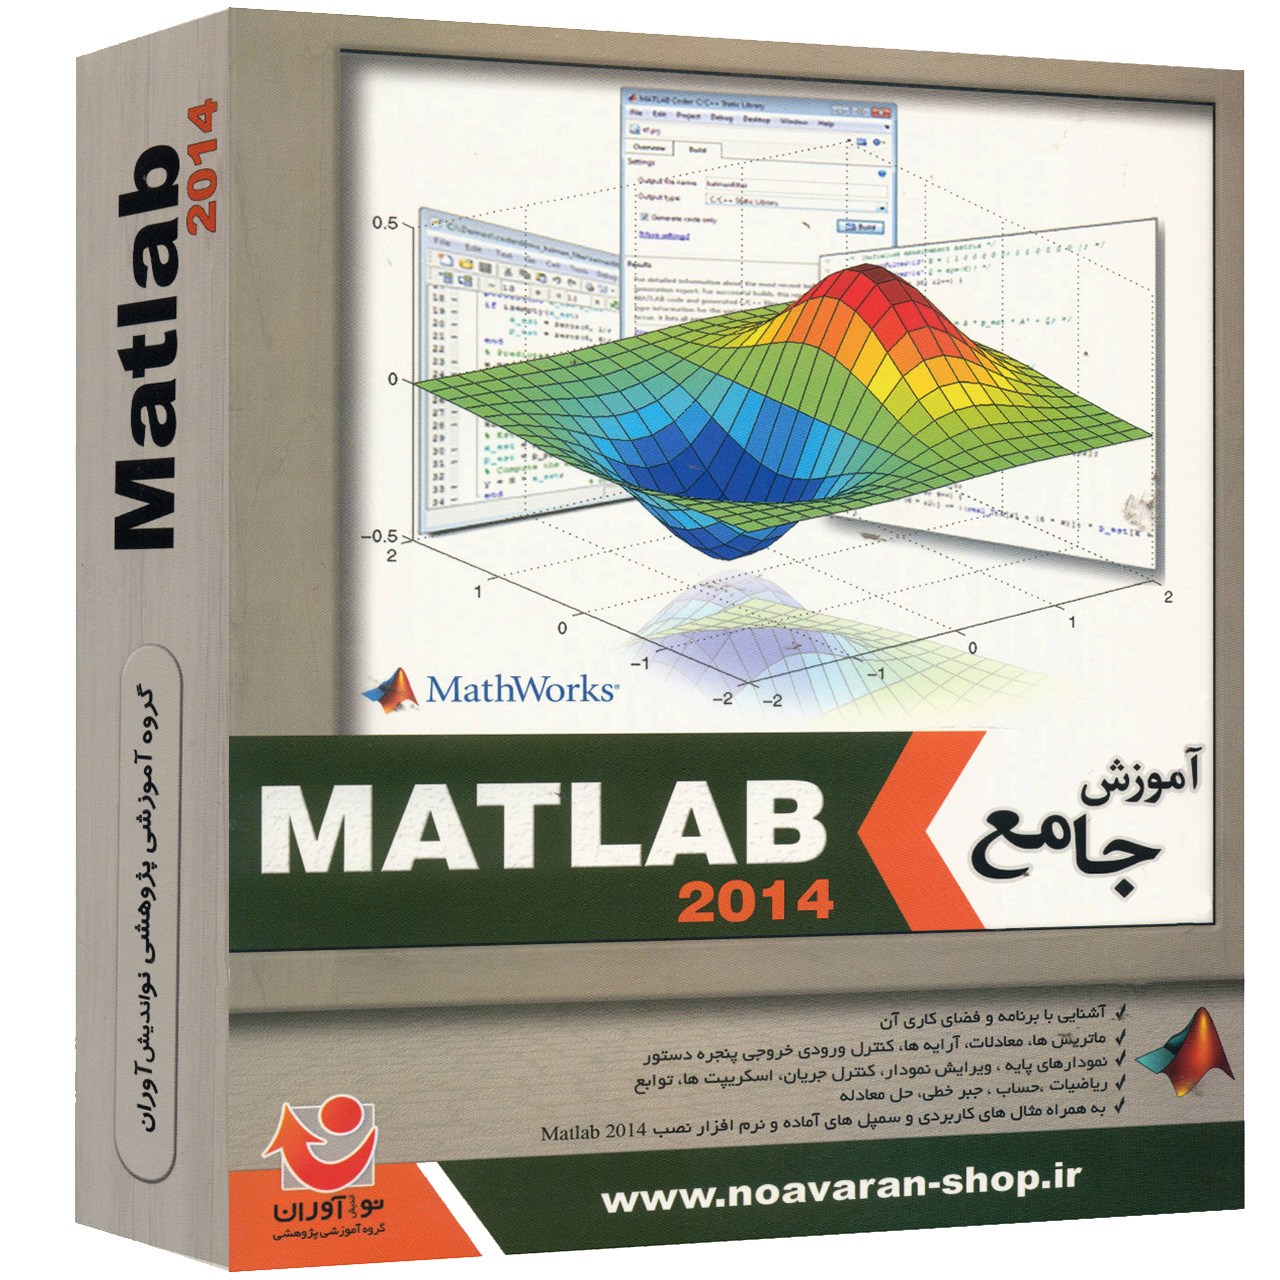 نقد و بررسی نرم افزار نوآوران آموزش جامع Matlab 2014 توسط خریداران